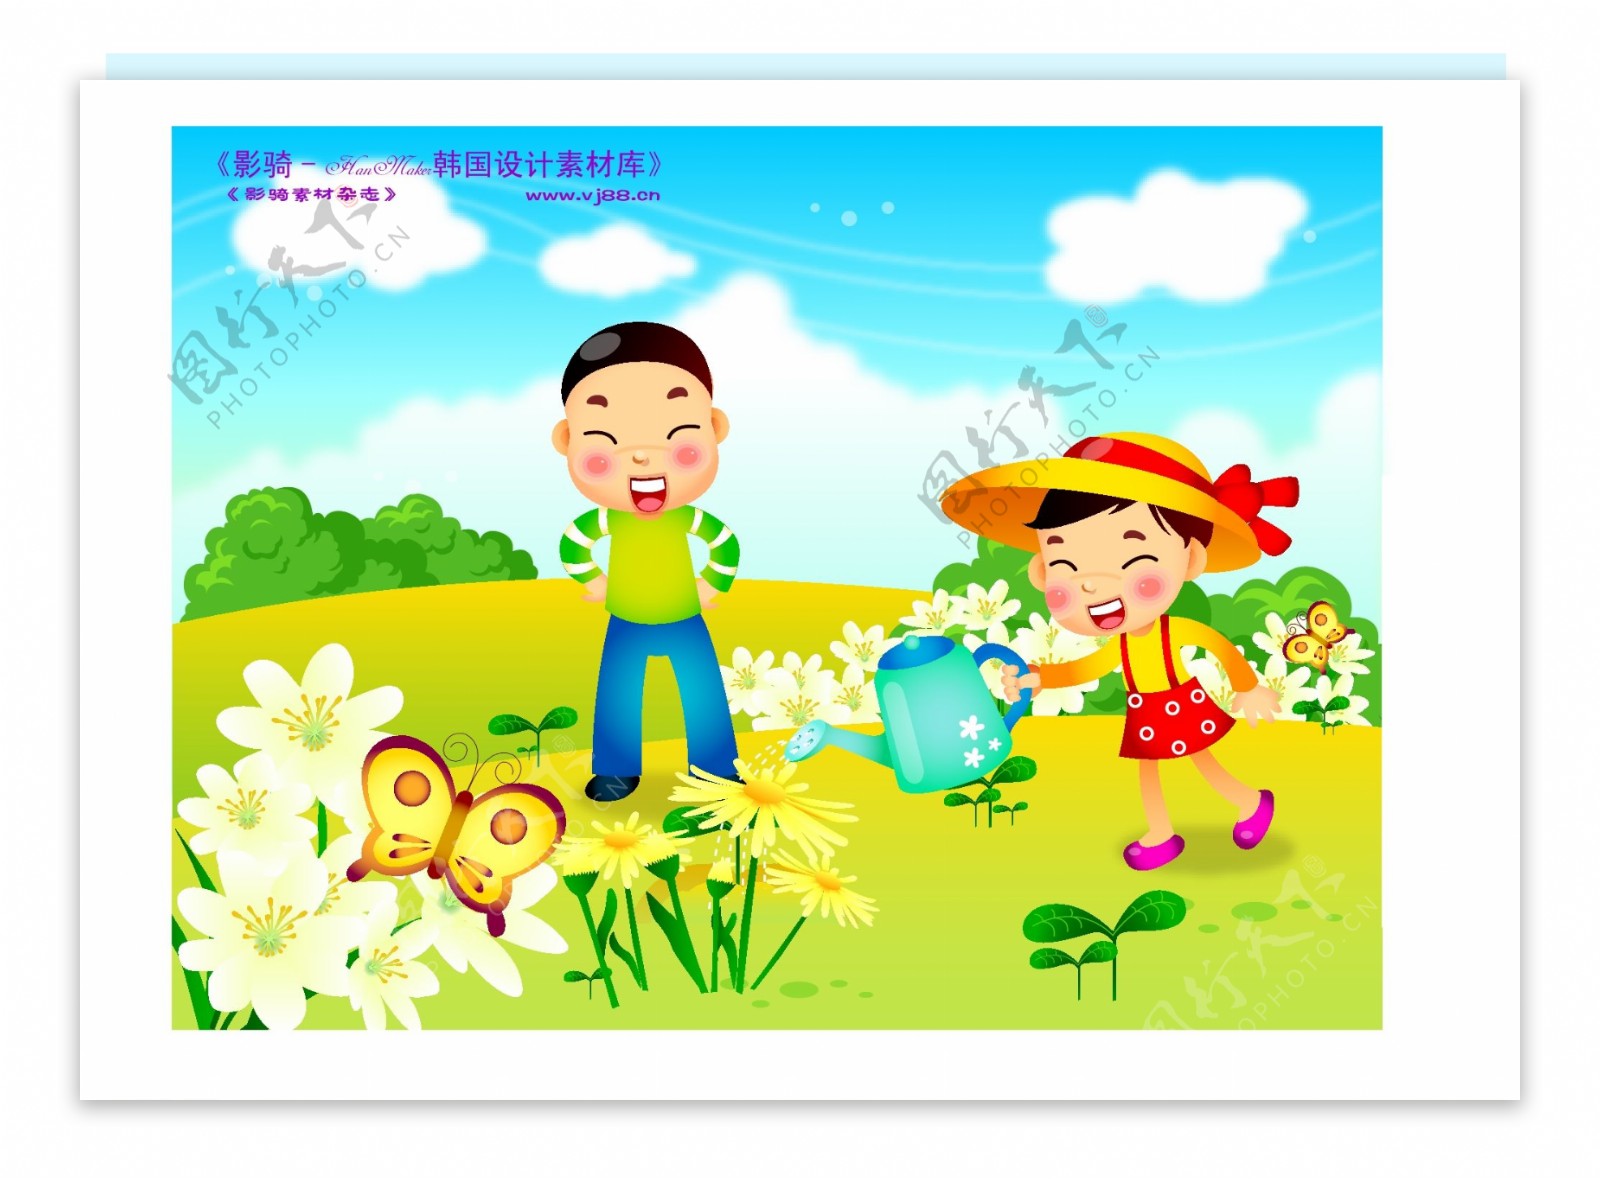 快乐儿童生活矢量素材矢量图片HanMaker韩国设计素材库